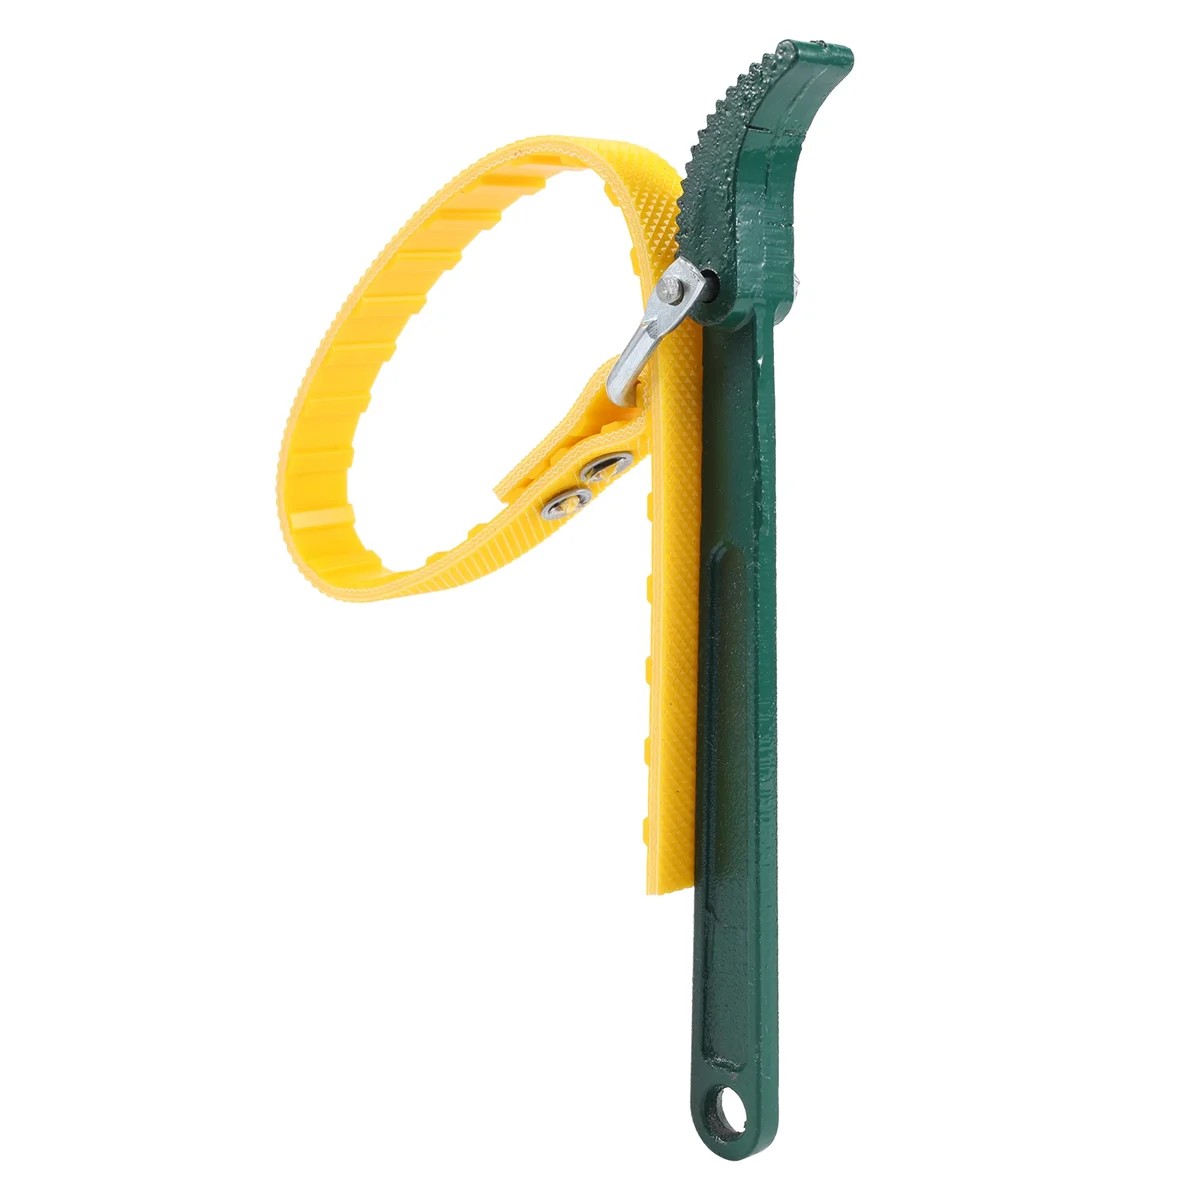 Ключ для ремня масляного фильтра 8-дюймовый Многофункциональный Ключ для ремня Ключ для масляного фильтра Регулируемый Ручной Инструмент для снятия